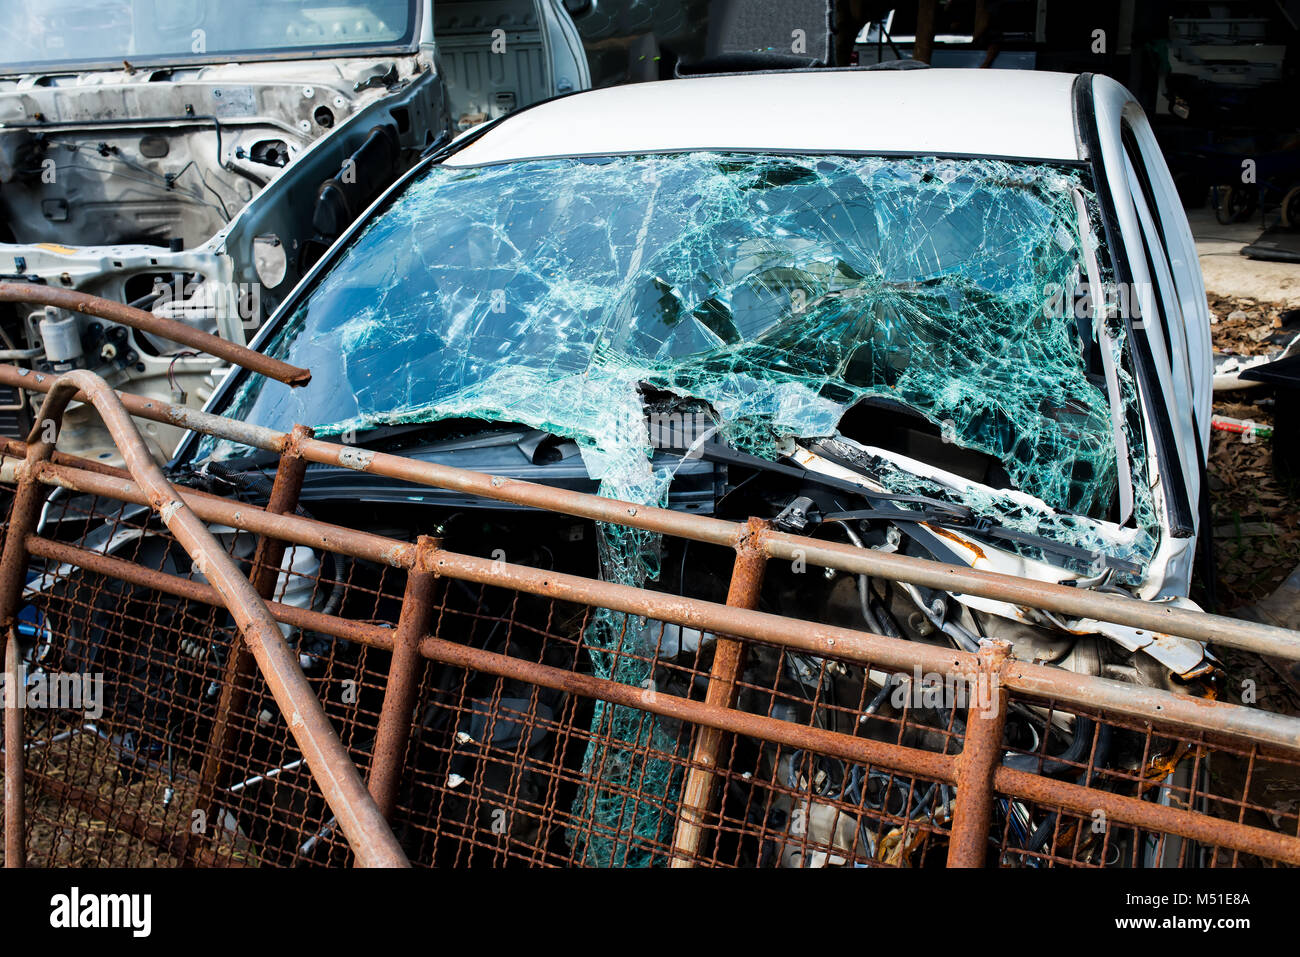 Die crash Unfall Auto whit gebrochene Frontscheibe Spiegel an den Papierkorb garage Foto mit niedriger Beleuchtung im Freien. Stockfoto